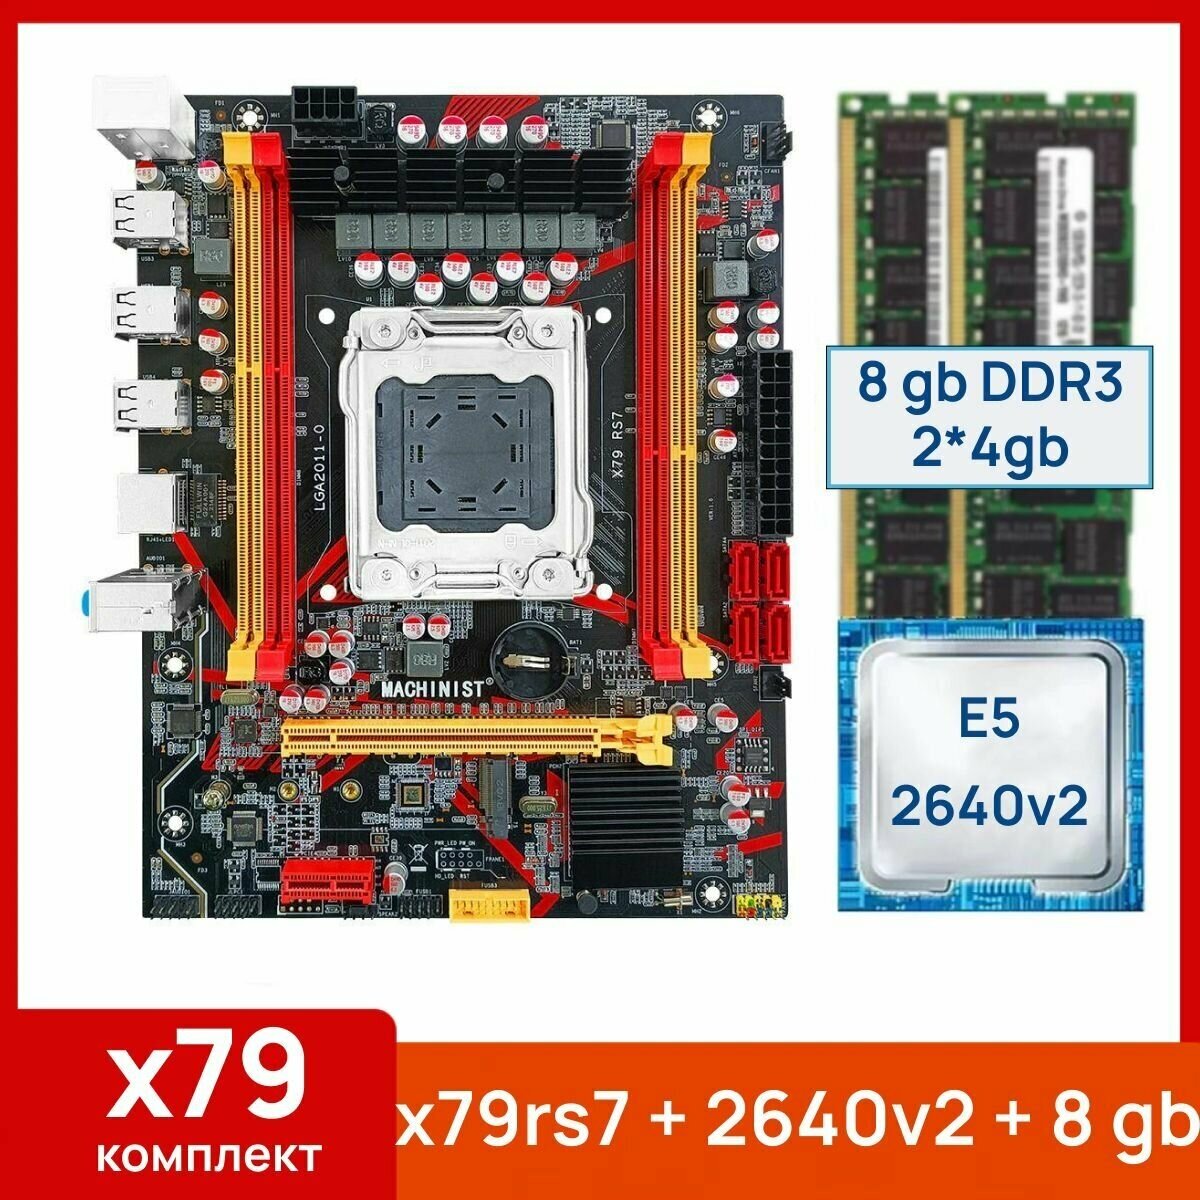 Комплект: Материнская плата Machinist RS-7 + Процессор Xeon E5 2640v2 + 8 gb(2x4gb) DDR3 серверная